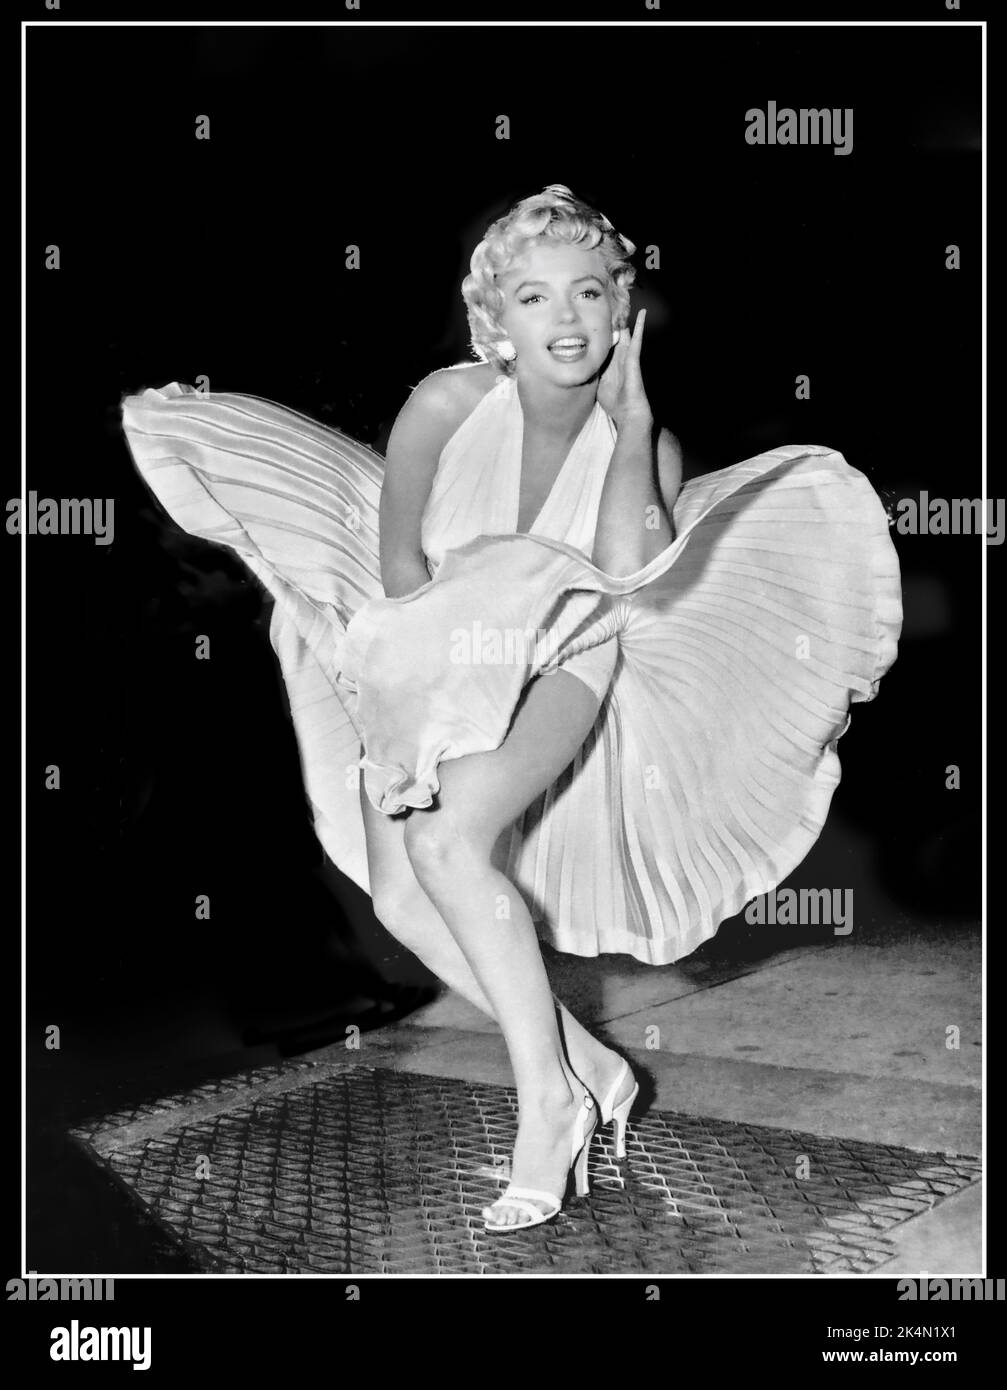 Der Rock von Marilyn Monroe wird in die Luft gesprengen, um das 7 Year Itch Vintage Film Retro-Bild 1950s zu bewerben, während der Film „The Seven Year Itch“ auf den Straßen von New York gedreht wurde, Sie blieb offenbar während der Dreharbeiten zur berühmten „Rock-Szene“ stehen und posierte für die Reporter und Fotografen, die den Film filmten. Das Ergebnis ist ein ikonisches Bild, das den Film sofort hervorgebracht hat. Datum: 9. September 1954 Stockfoto